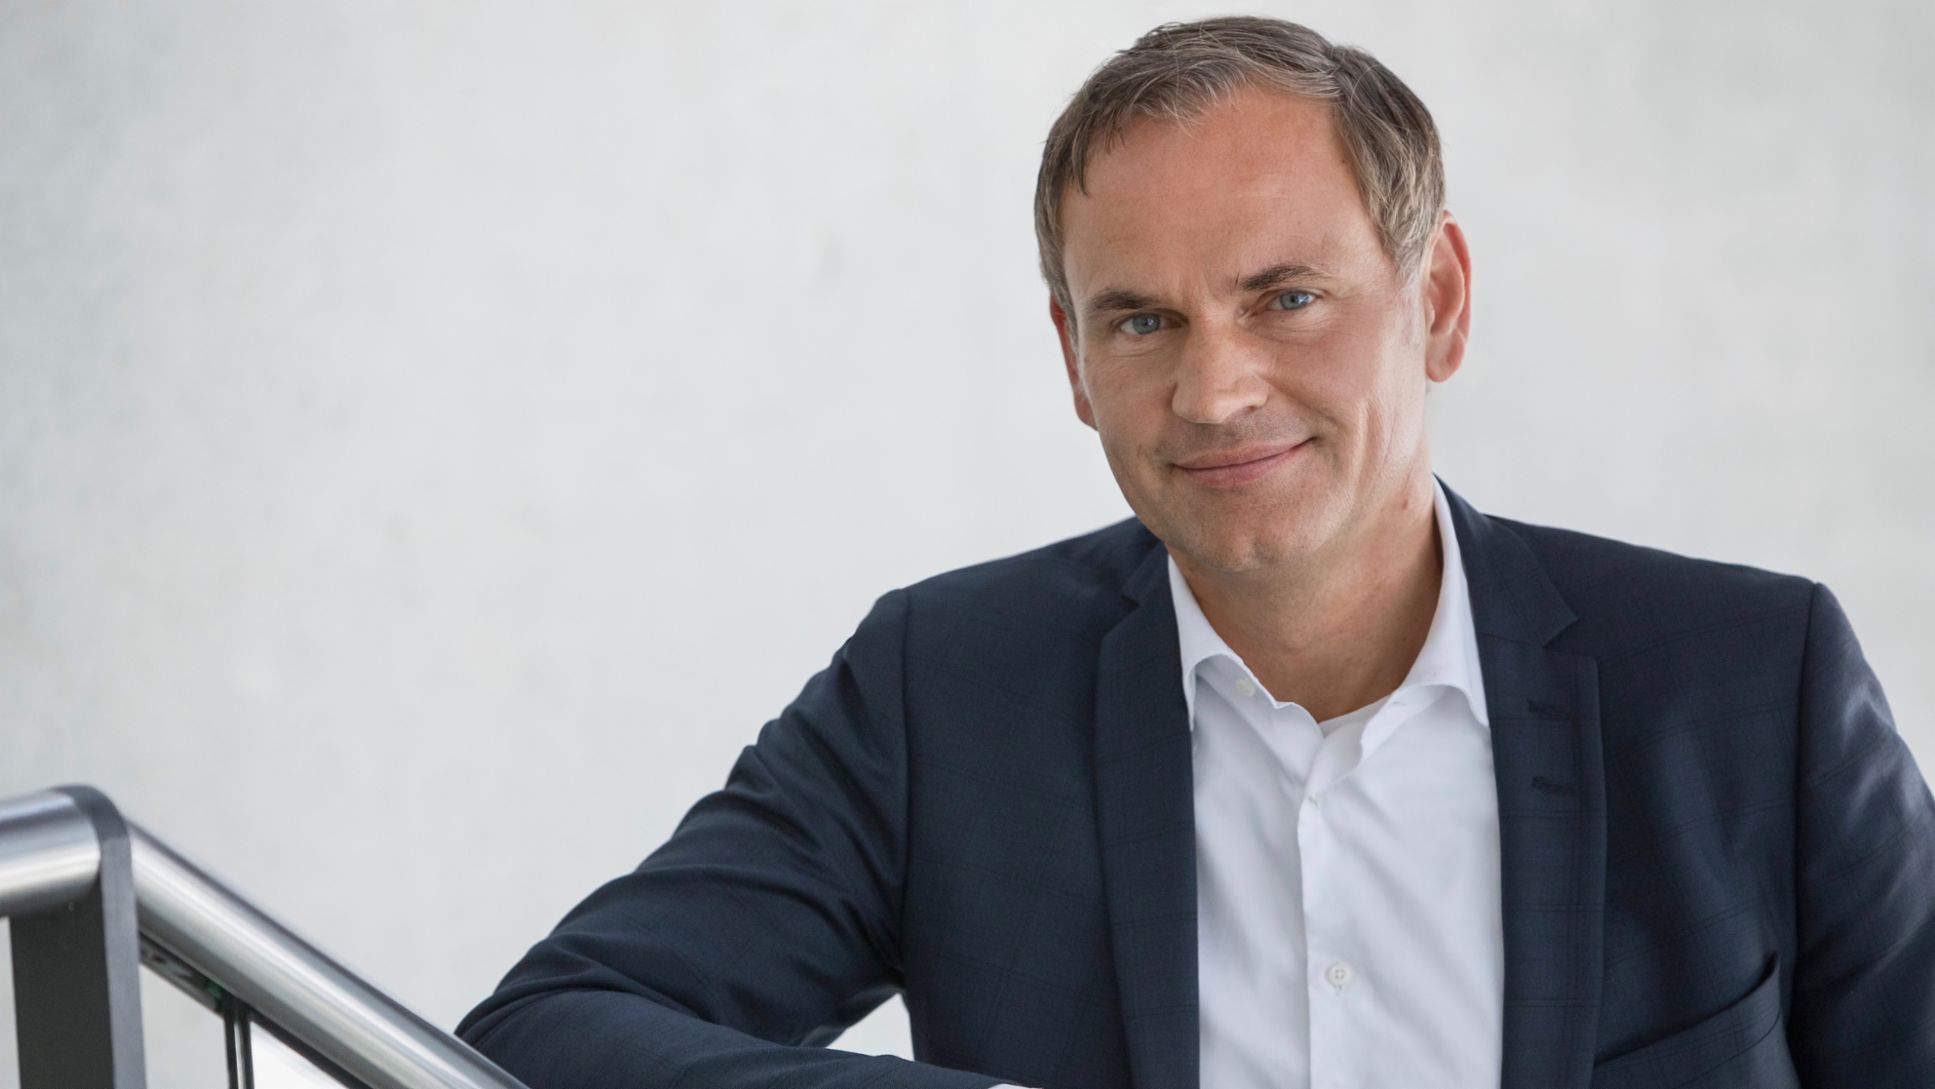 Oliver Blume, Presidente del Consejo de Dirección de Porsche AG, 2020, Porsche AG